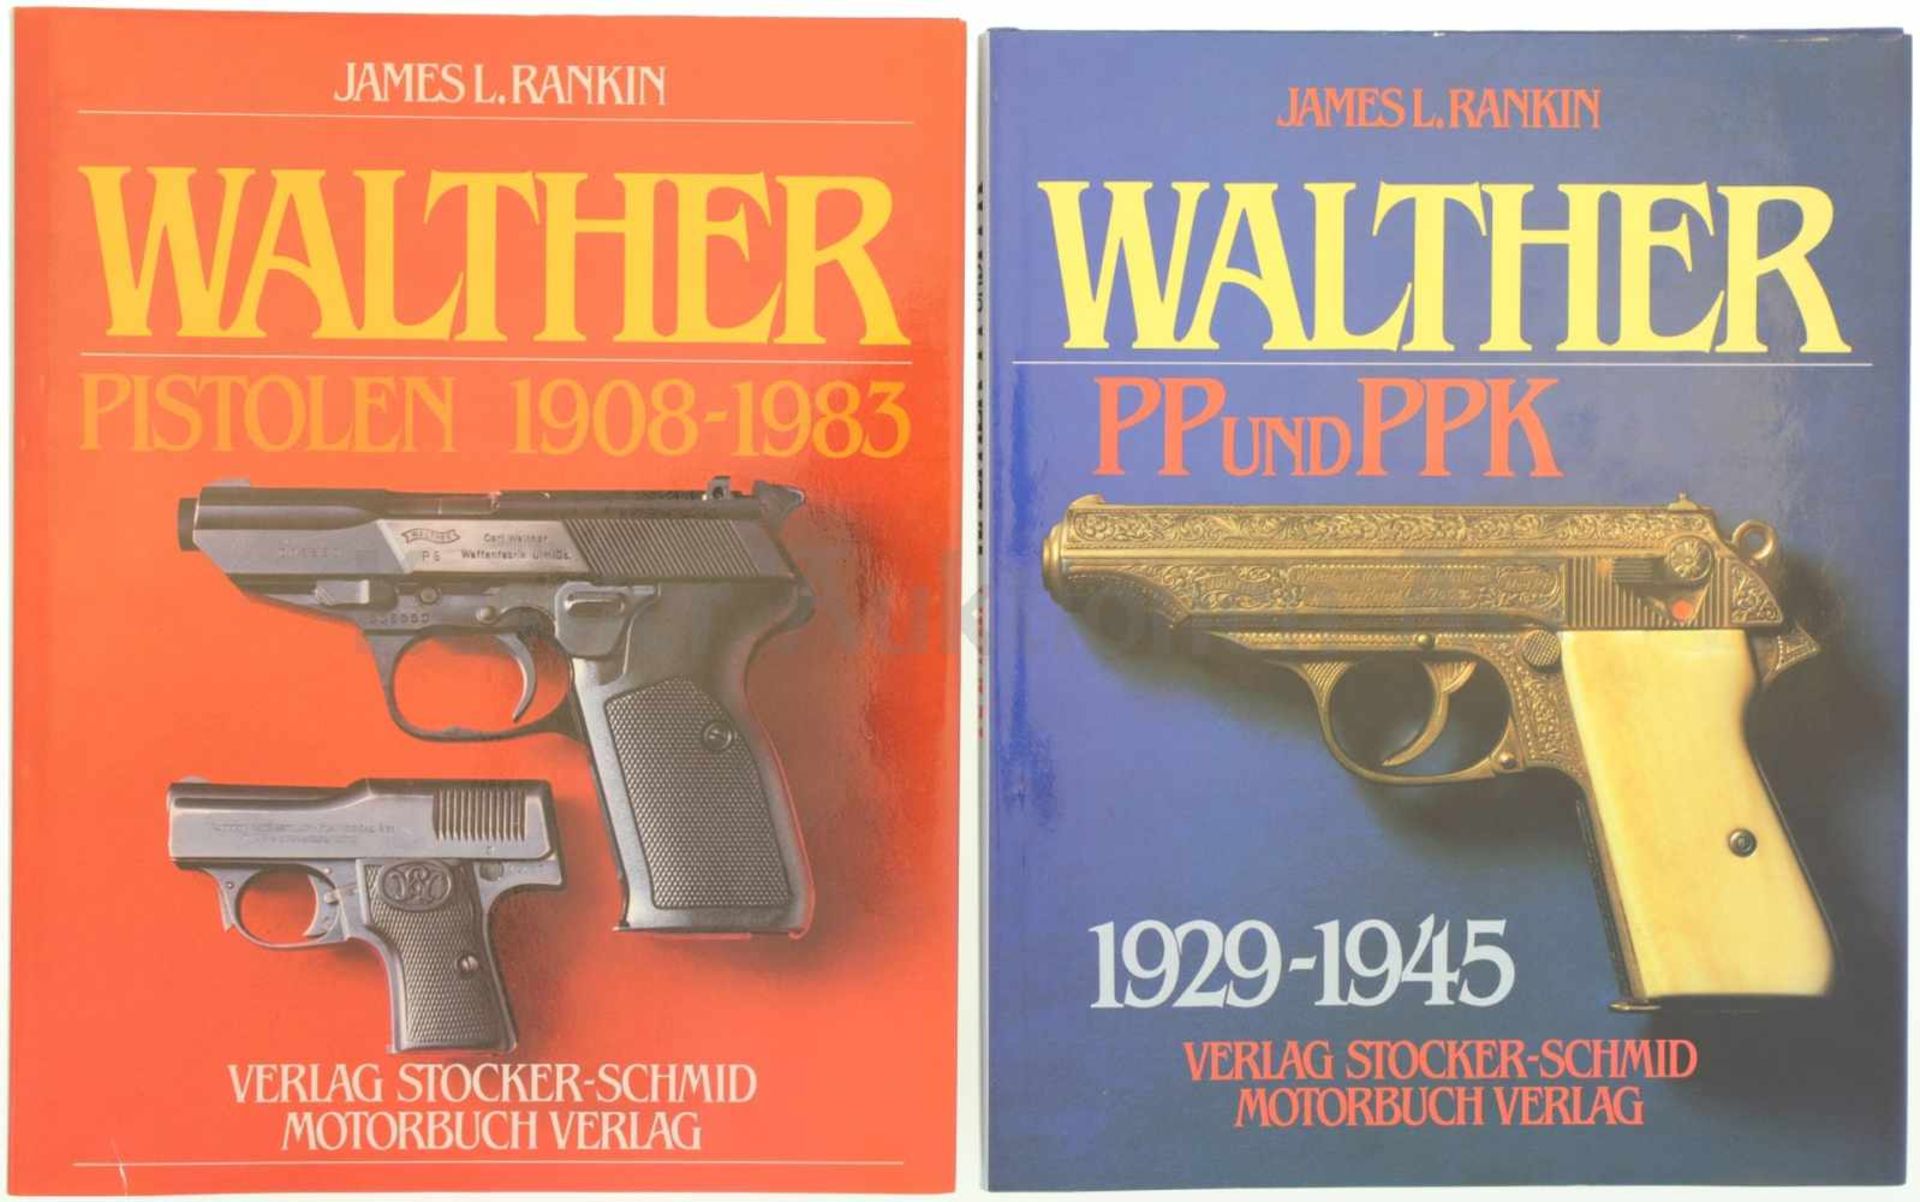 Konvolut von 2 Büchern Walther 1. Walther PP und PPK, 1929-1945, Autor James L. Rankin, Verlag